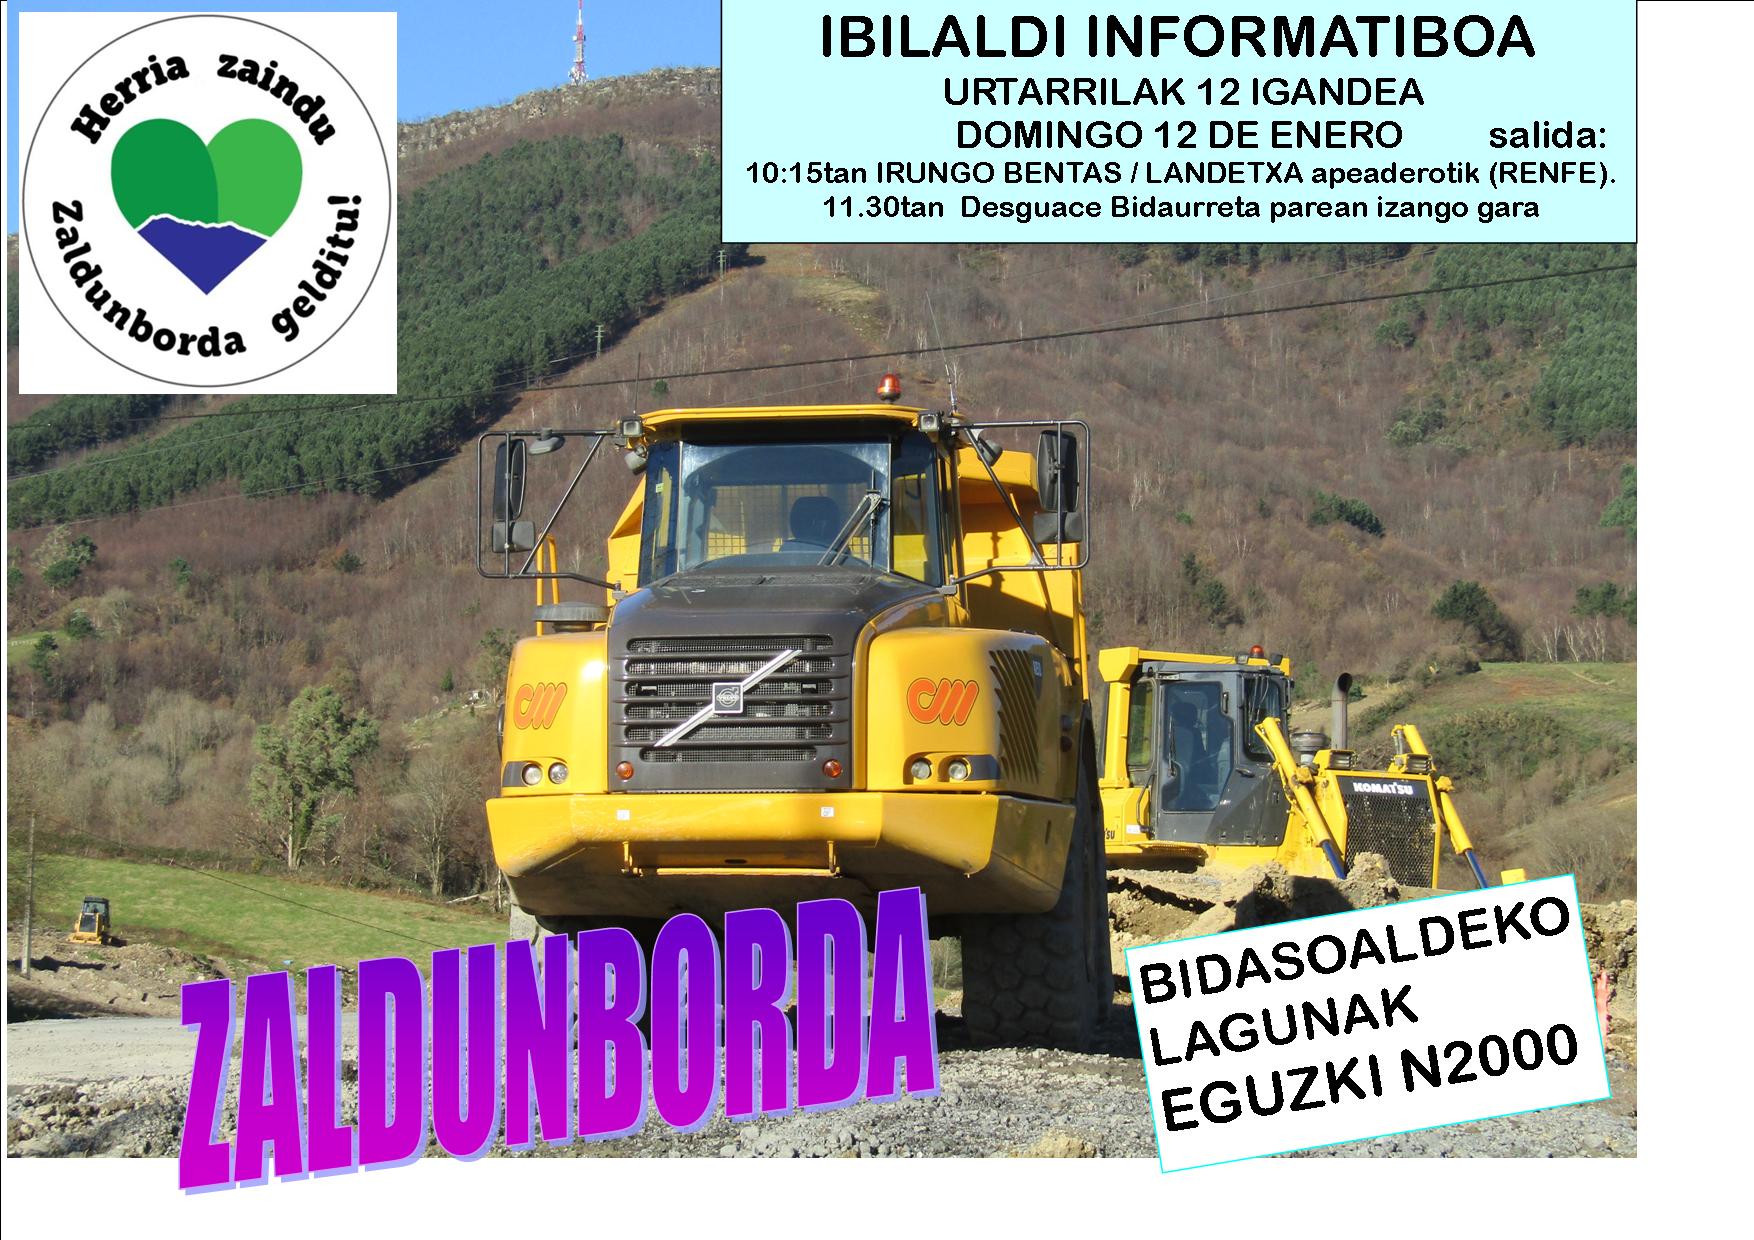 12 de enero: Marcha montañera-informativa Proyecto Zaldunborda